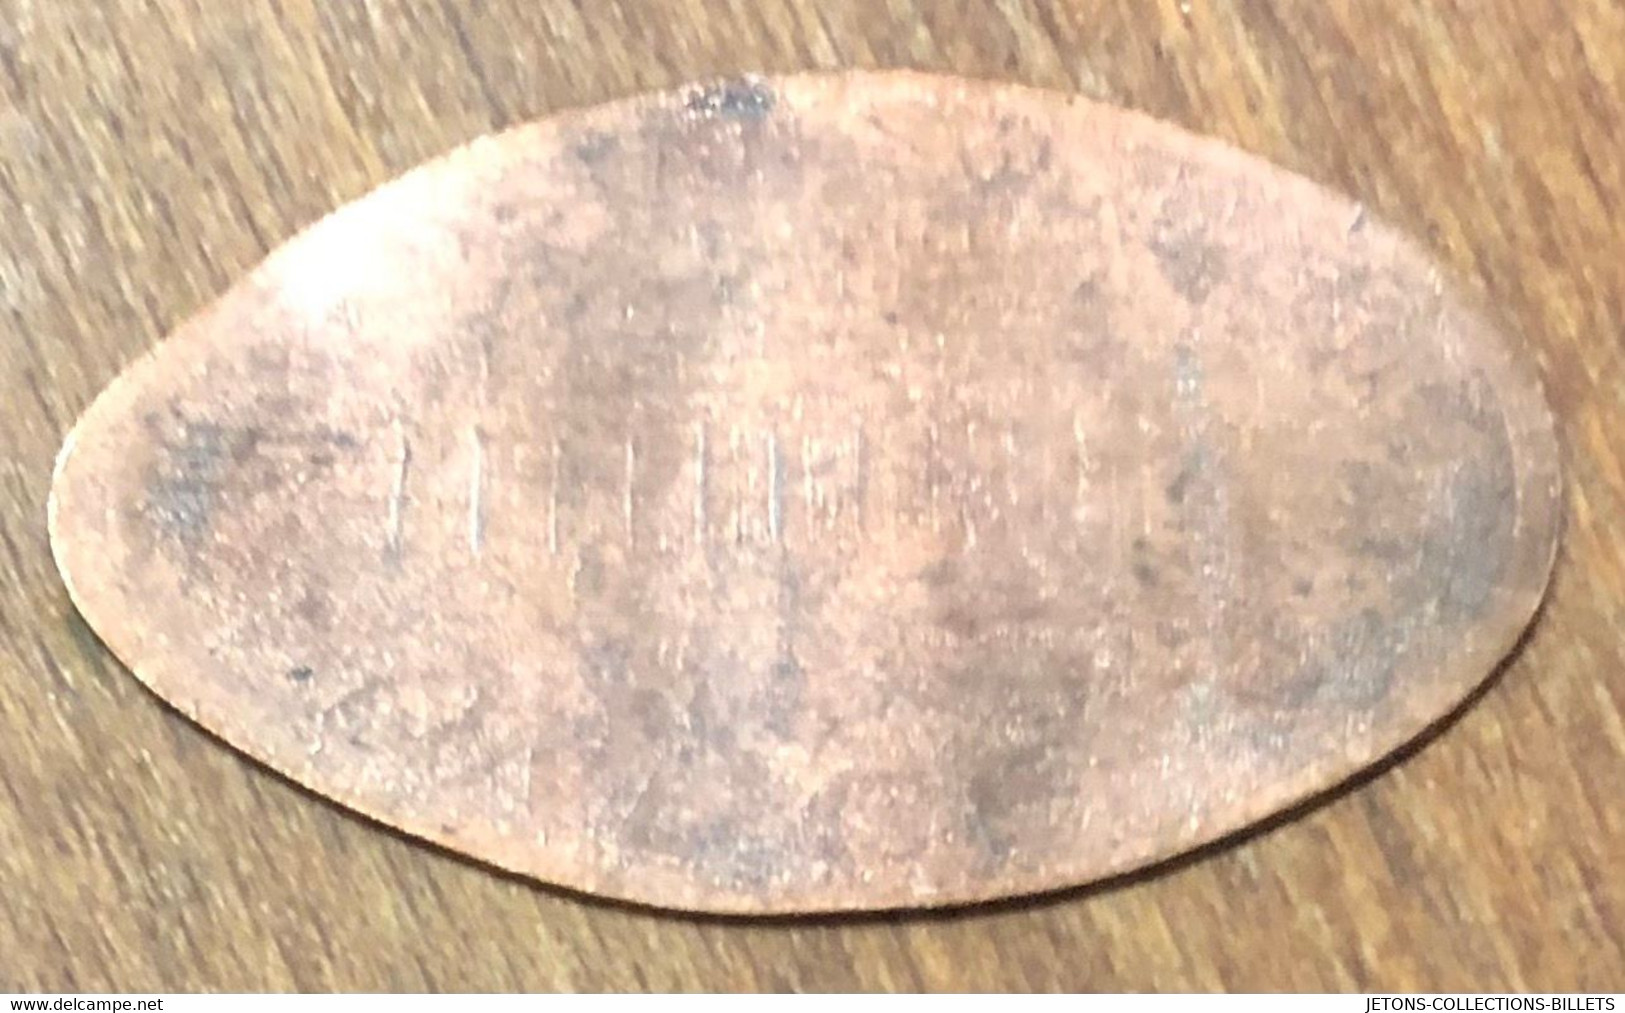 ÉTATS-UNIS USA RIVERBANKS ZOO GORILLE PIÈCE ÉCRASÉE PENNY ELONGATED COIN MEDAILLE TOURISTIQUE MEDALS TOKENS - Souvenirmunten (elongated Coins)